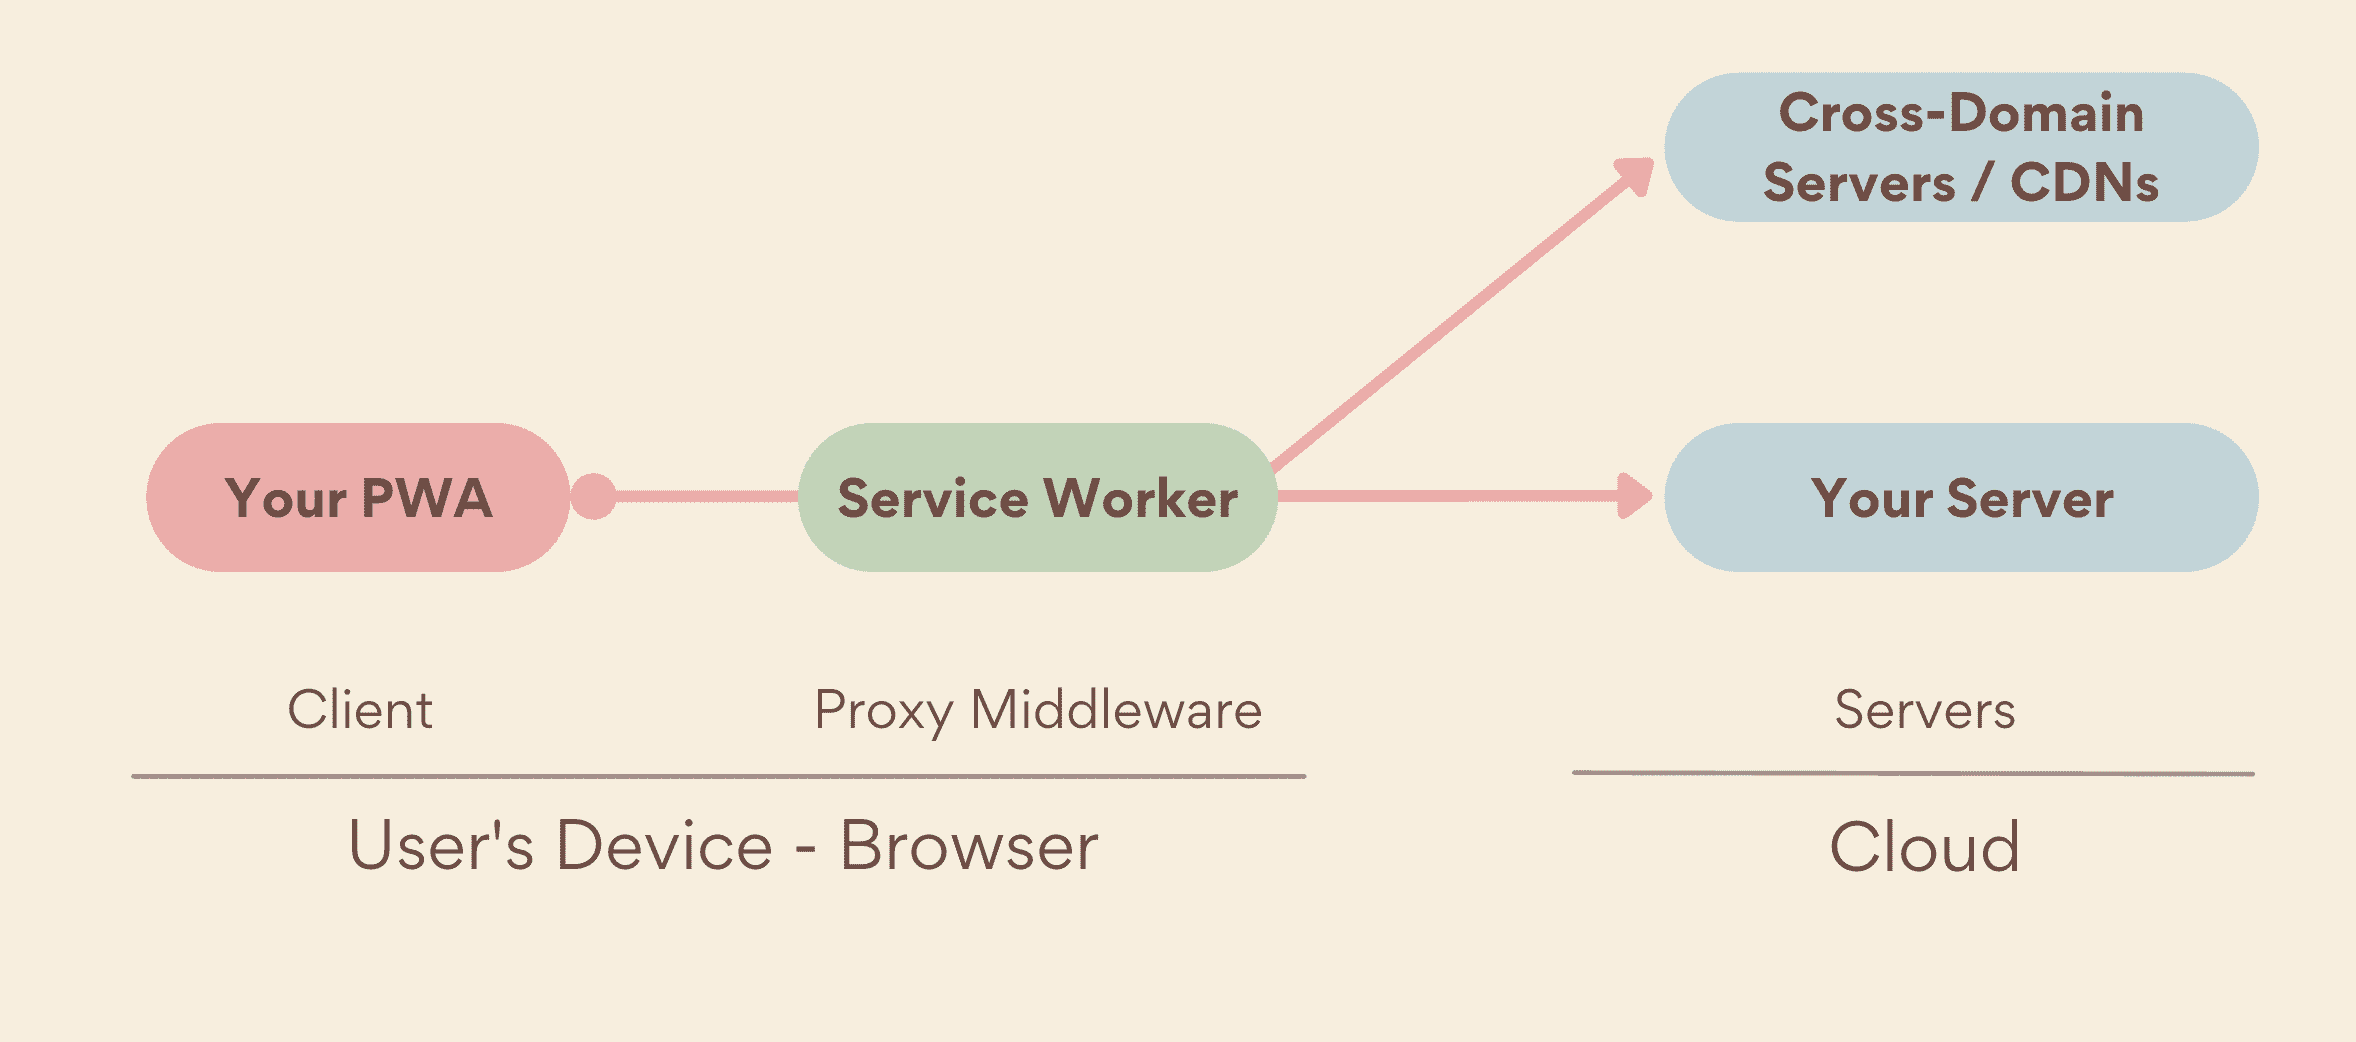 सर्विस वर्कर, जो आपके PWA और सर्वर के बीच डिवाइस-साइड पर काम करता है. यह मिडलवेयर प्रॉक्सी के तौर पर काम करता है. इसमें आपके सर्वर और क्रॉस-डोमेन सर्वर, दोनों शामिल होते हैं.